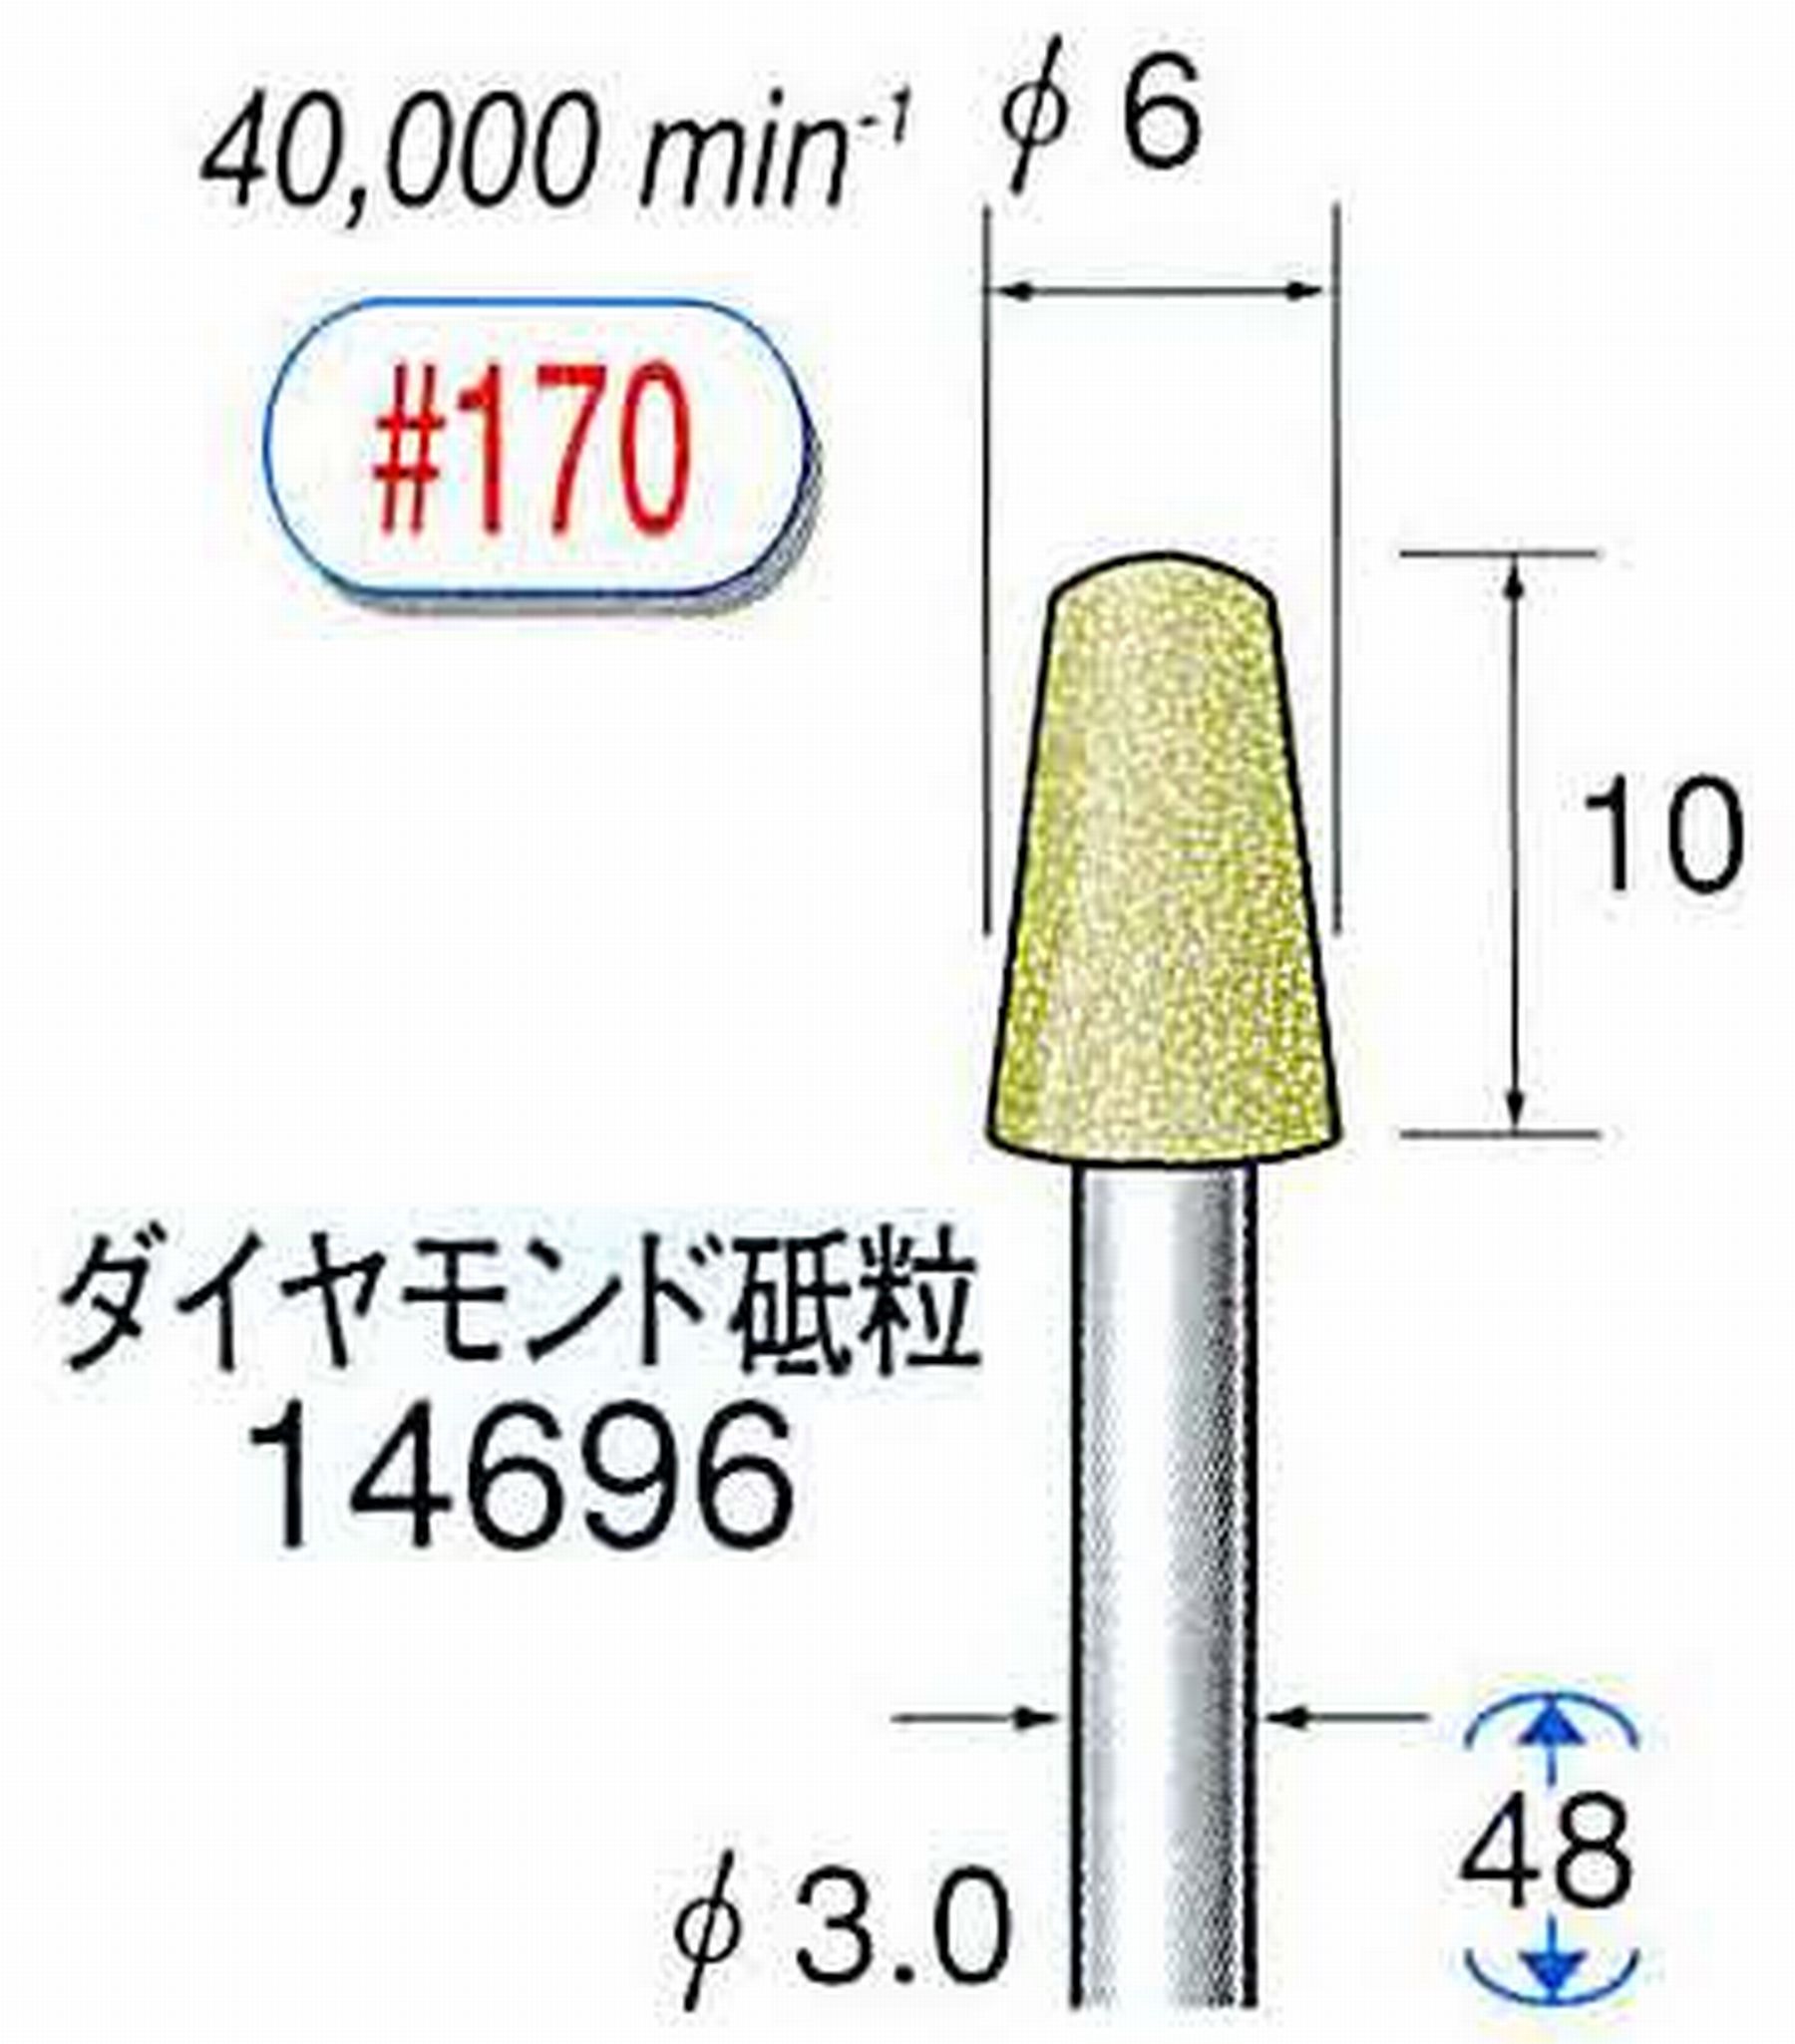 ナカニシ/NAKANISHI セラミックダイヤモンド砥石 ダイヤモンド砥粒 軸径(シャンク)φ3.0mm 14696